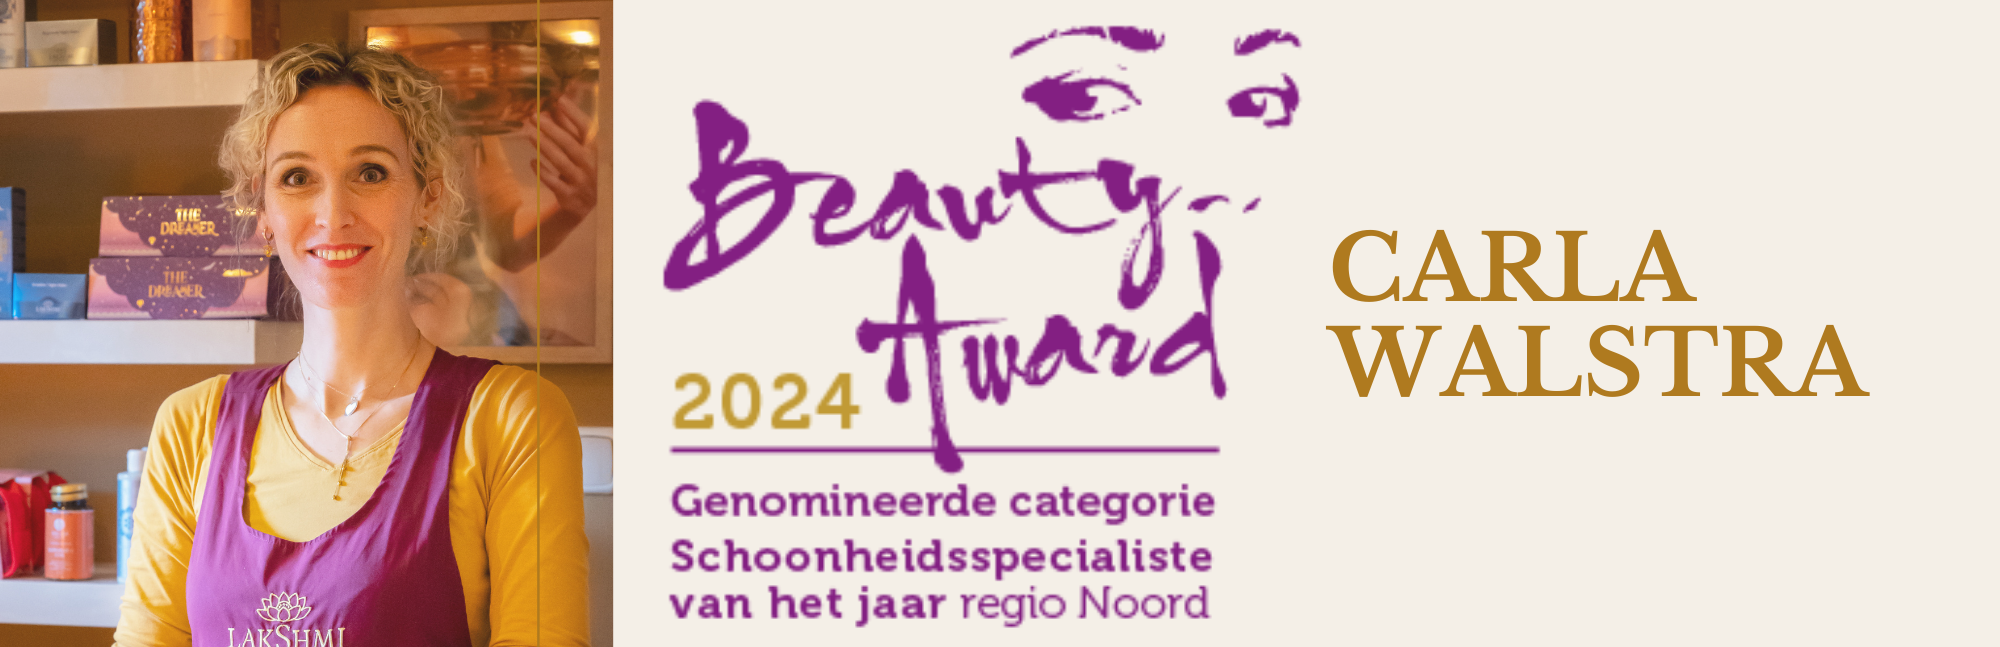 Beauty Award 2024